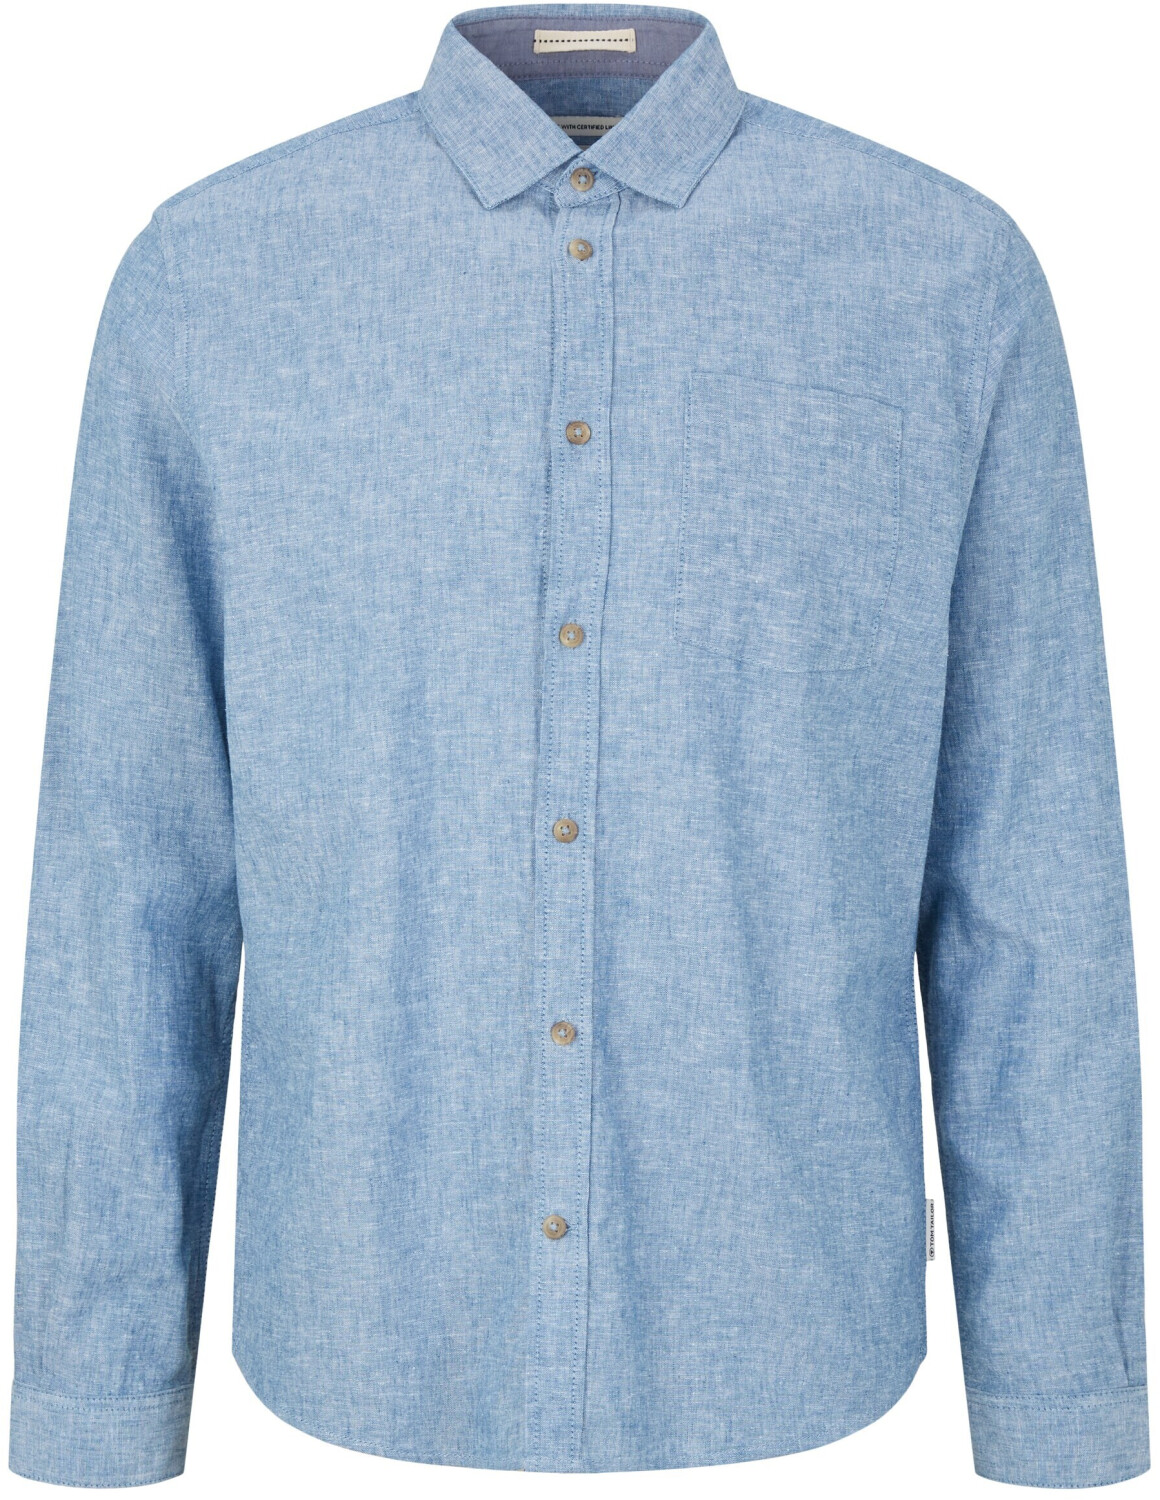 Tom Tailor Hemd mit Brusttasche (1034904-26507) helsinki night blue  chambray ab 31,00 € | Preisvergleich bei